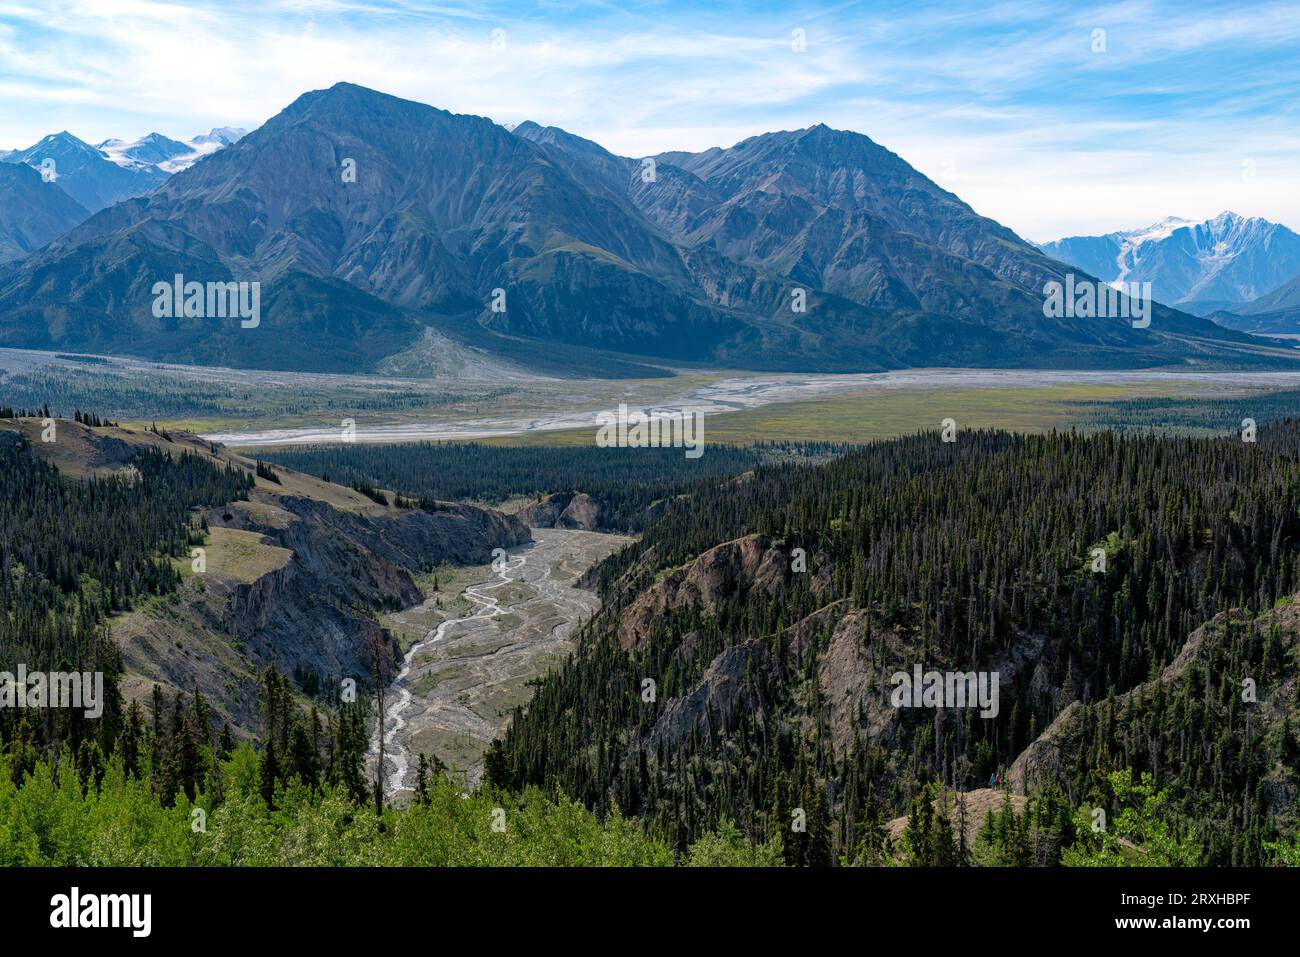 Malerischer Überblick über die atemberaubenden Ausblicke auf den Kluane National Park mit den Bergen und dem Slim's River in der Ferne; Yukon, Kanada Stockfoto